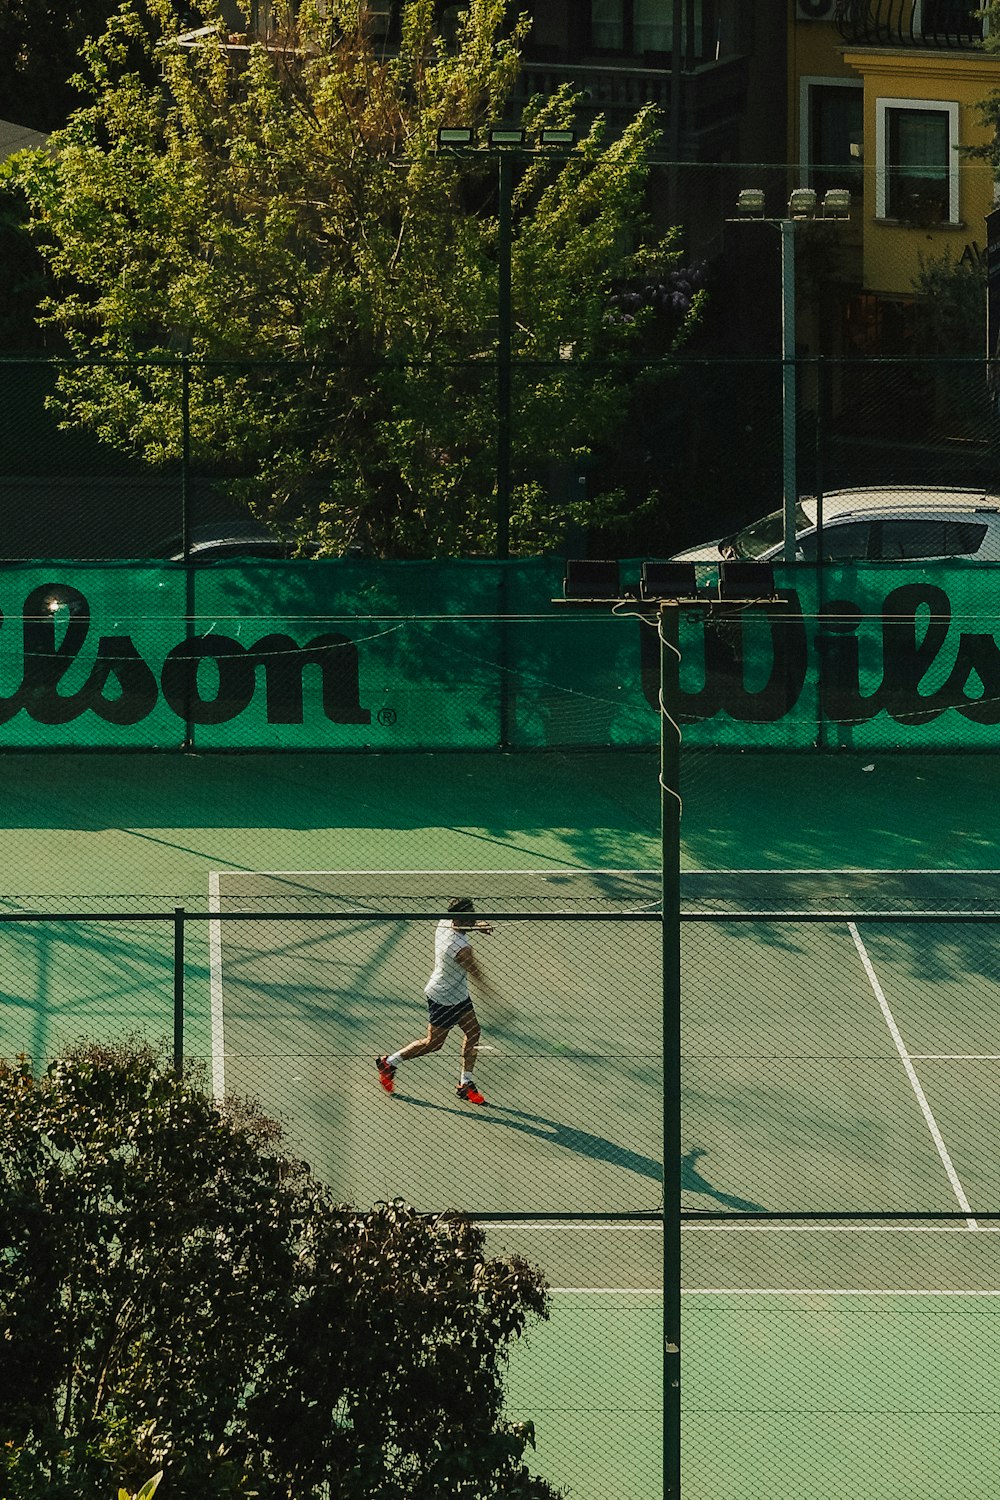 a man on a tennis court holding a racquet